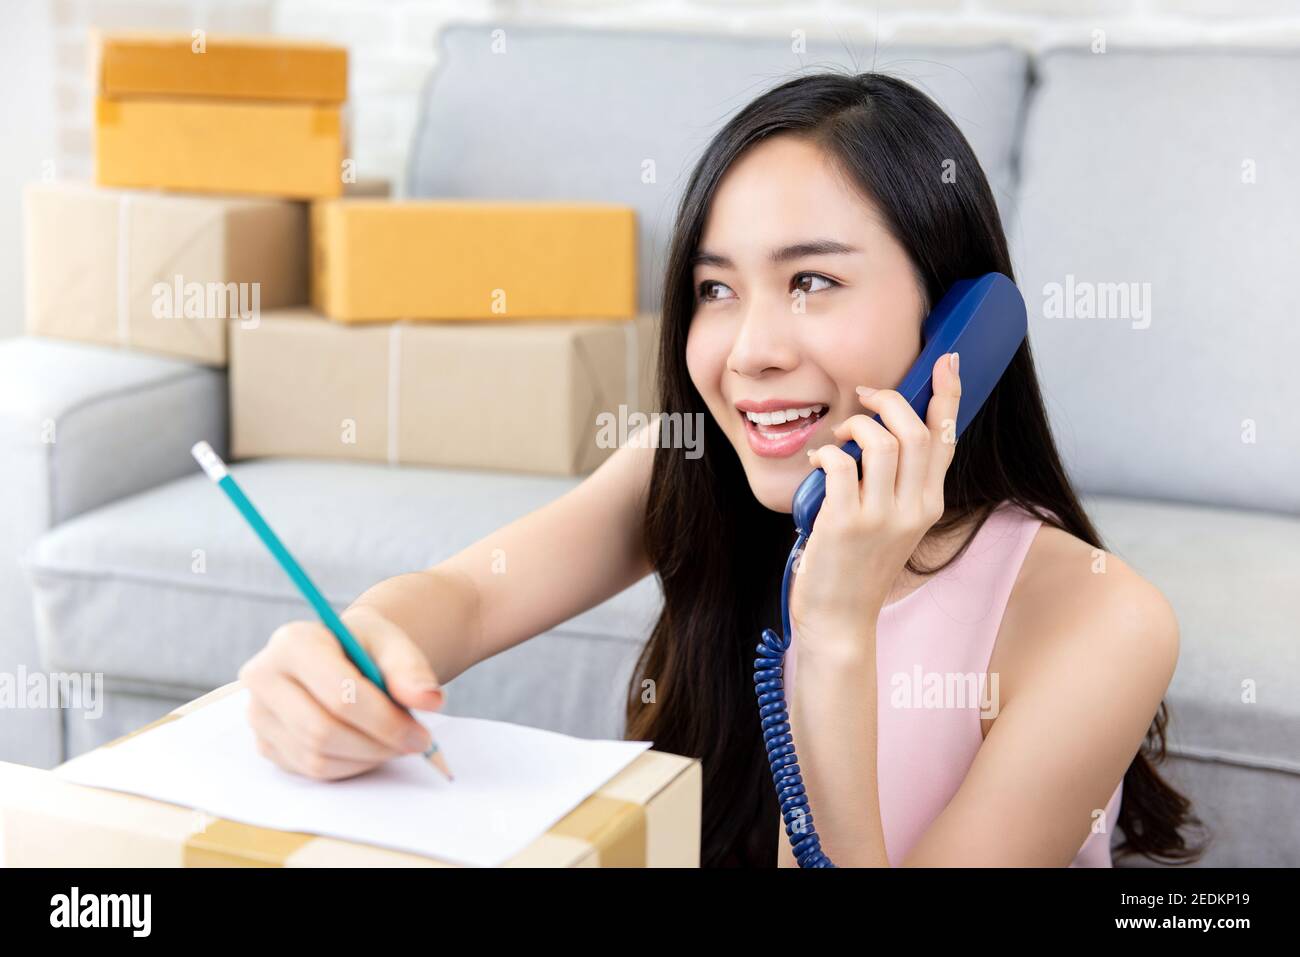 Junge asiatische Frau Unternehmer oder freiberufliche Online-Verkäufer arbeiten bei Home Bestätigung von Bestellungen vom Kunden am Telefon Vorbereitung für Lieferung Stockfoto